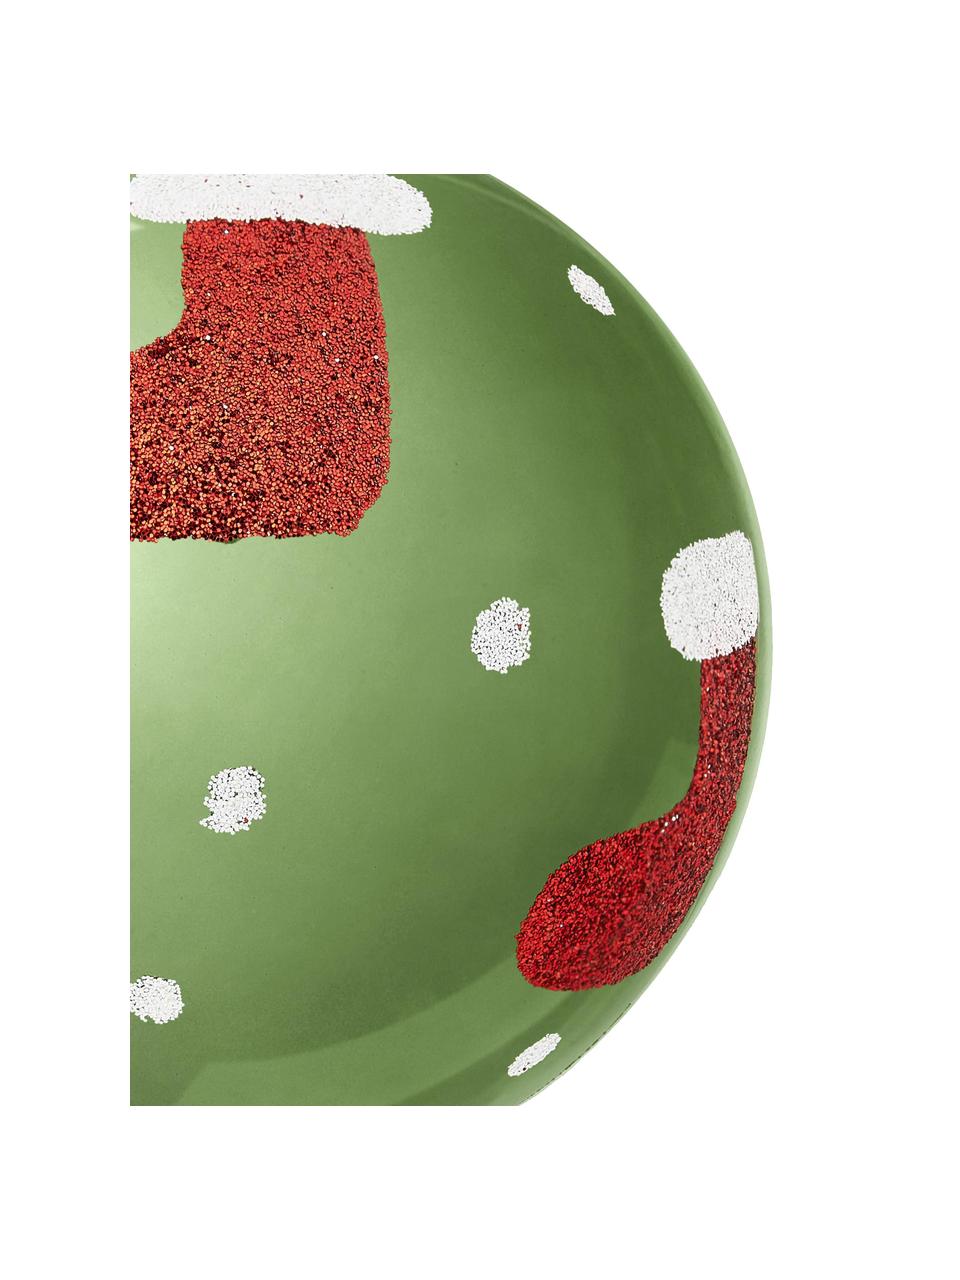 Sada nerozbitných vánočních ozdob Socky, Ø 8 cm, 12 dílů, Umělá hmota, Zelená, bílá, červená, stříbrná, Ø 8 cm